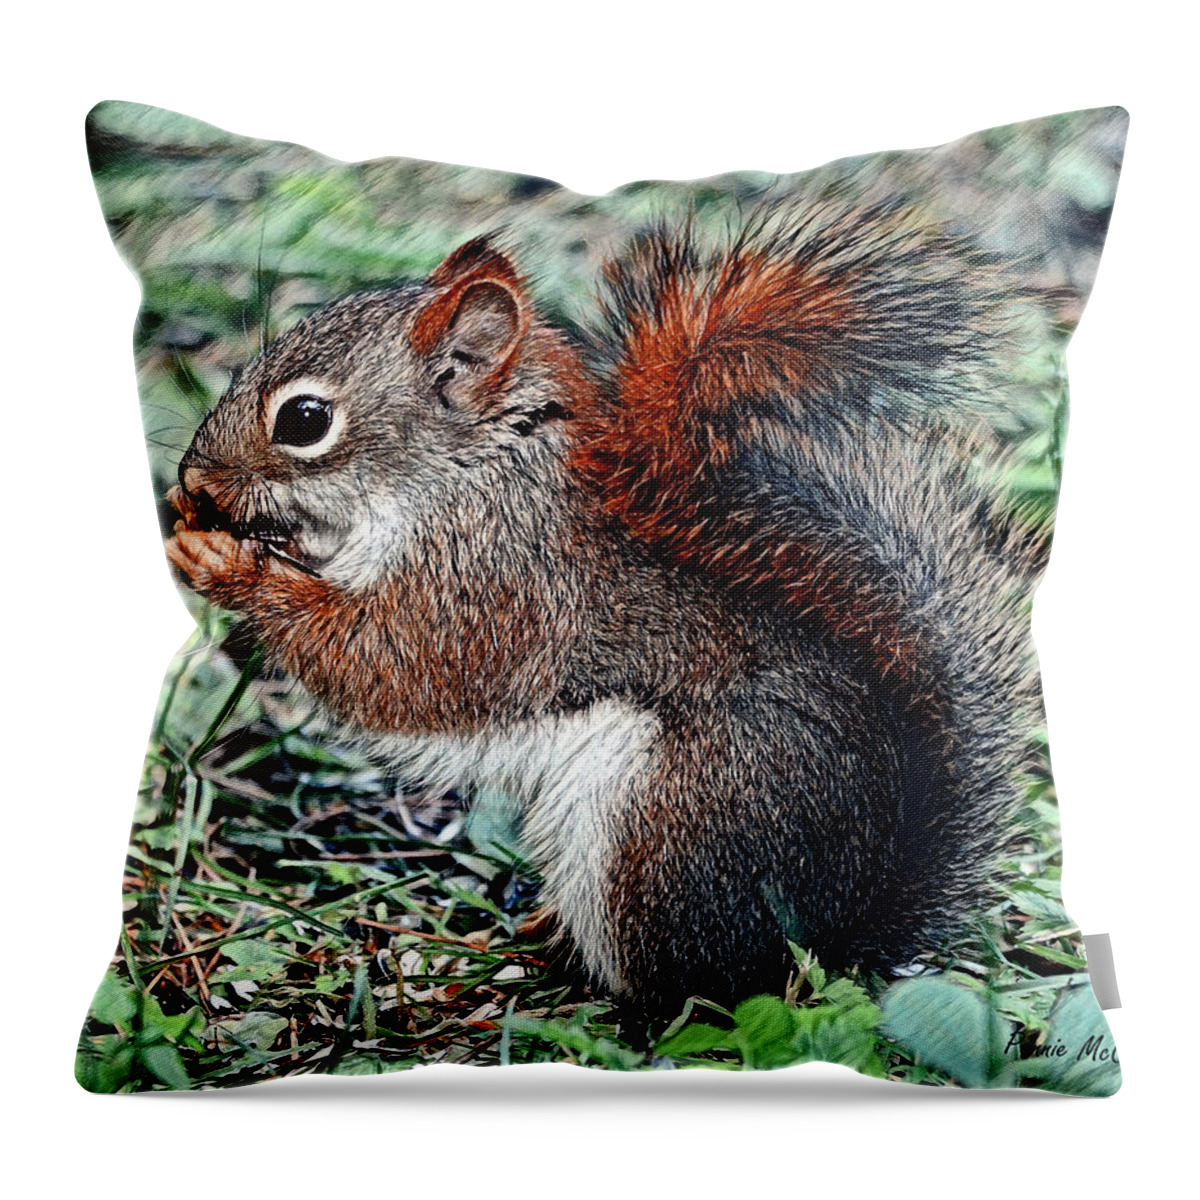 Squirrel Throw Pillow featuring the digital art Ground Squirrel by Pennie McCracken